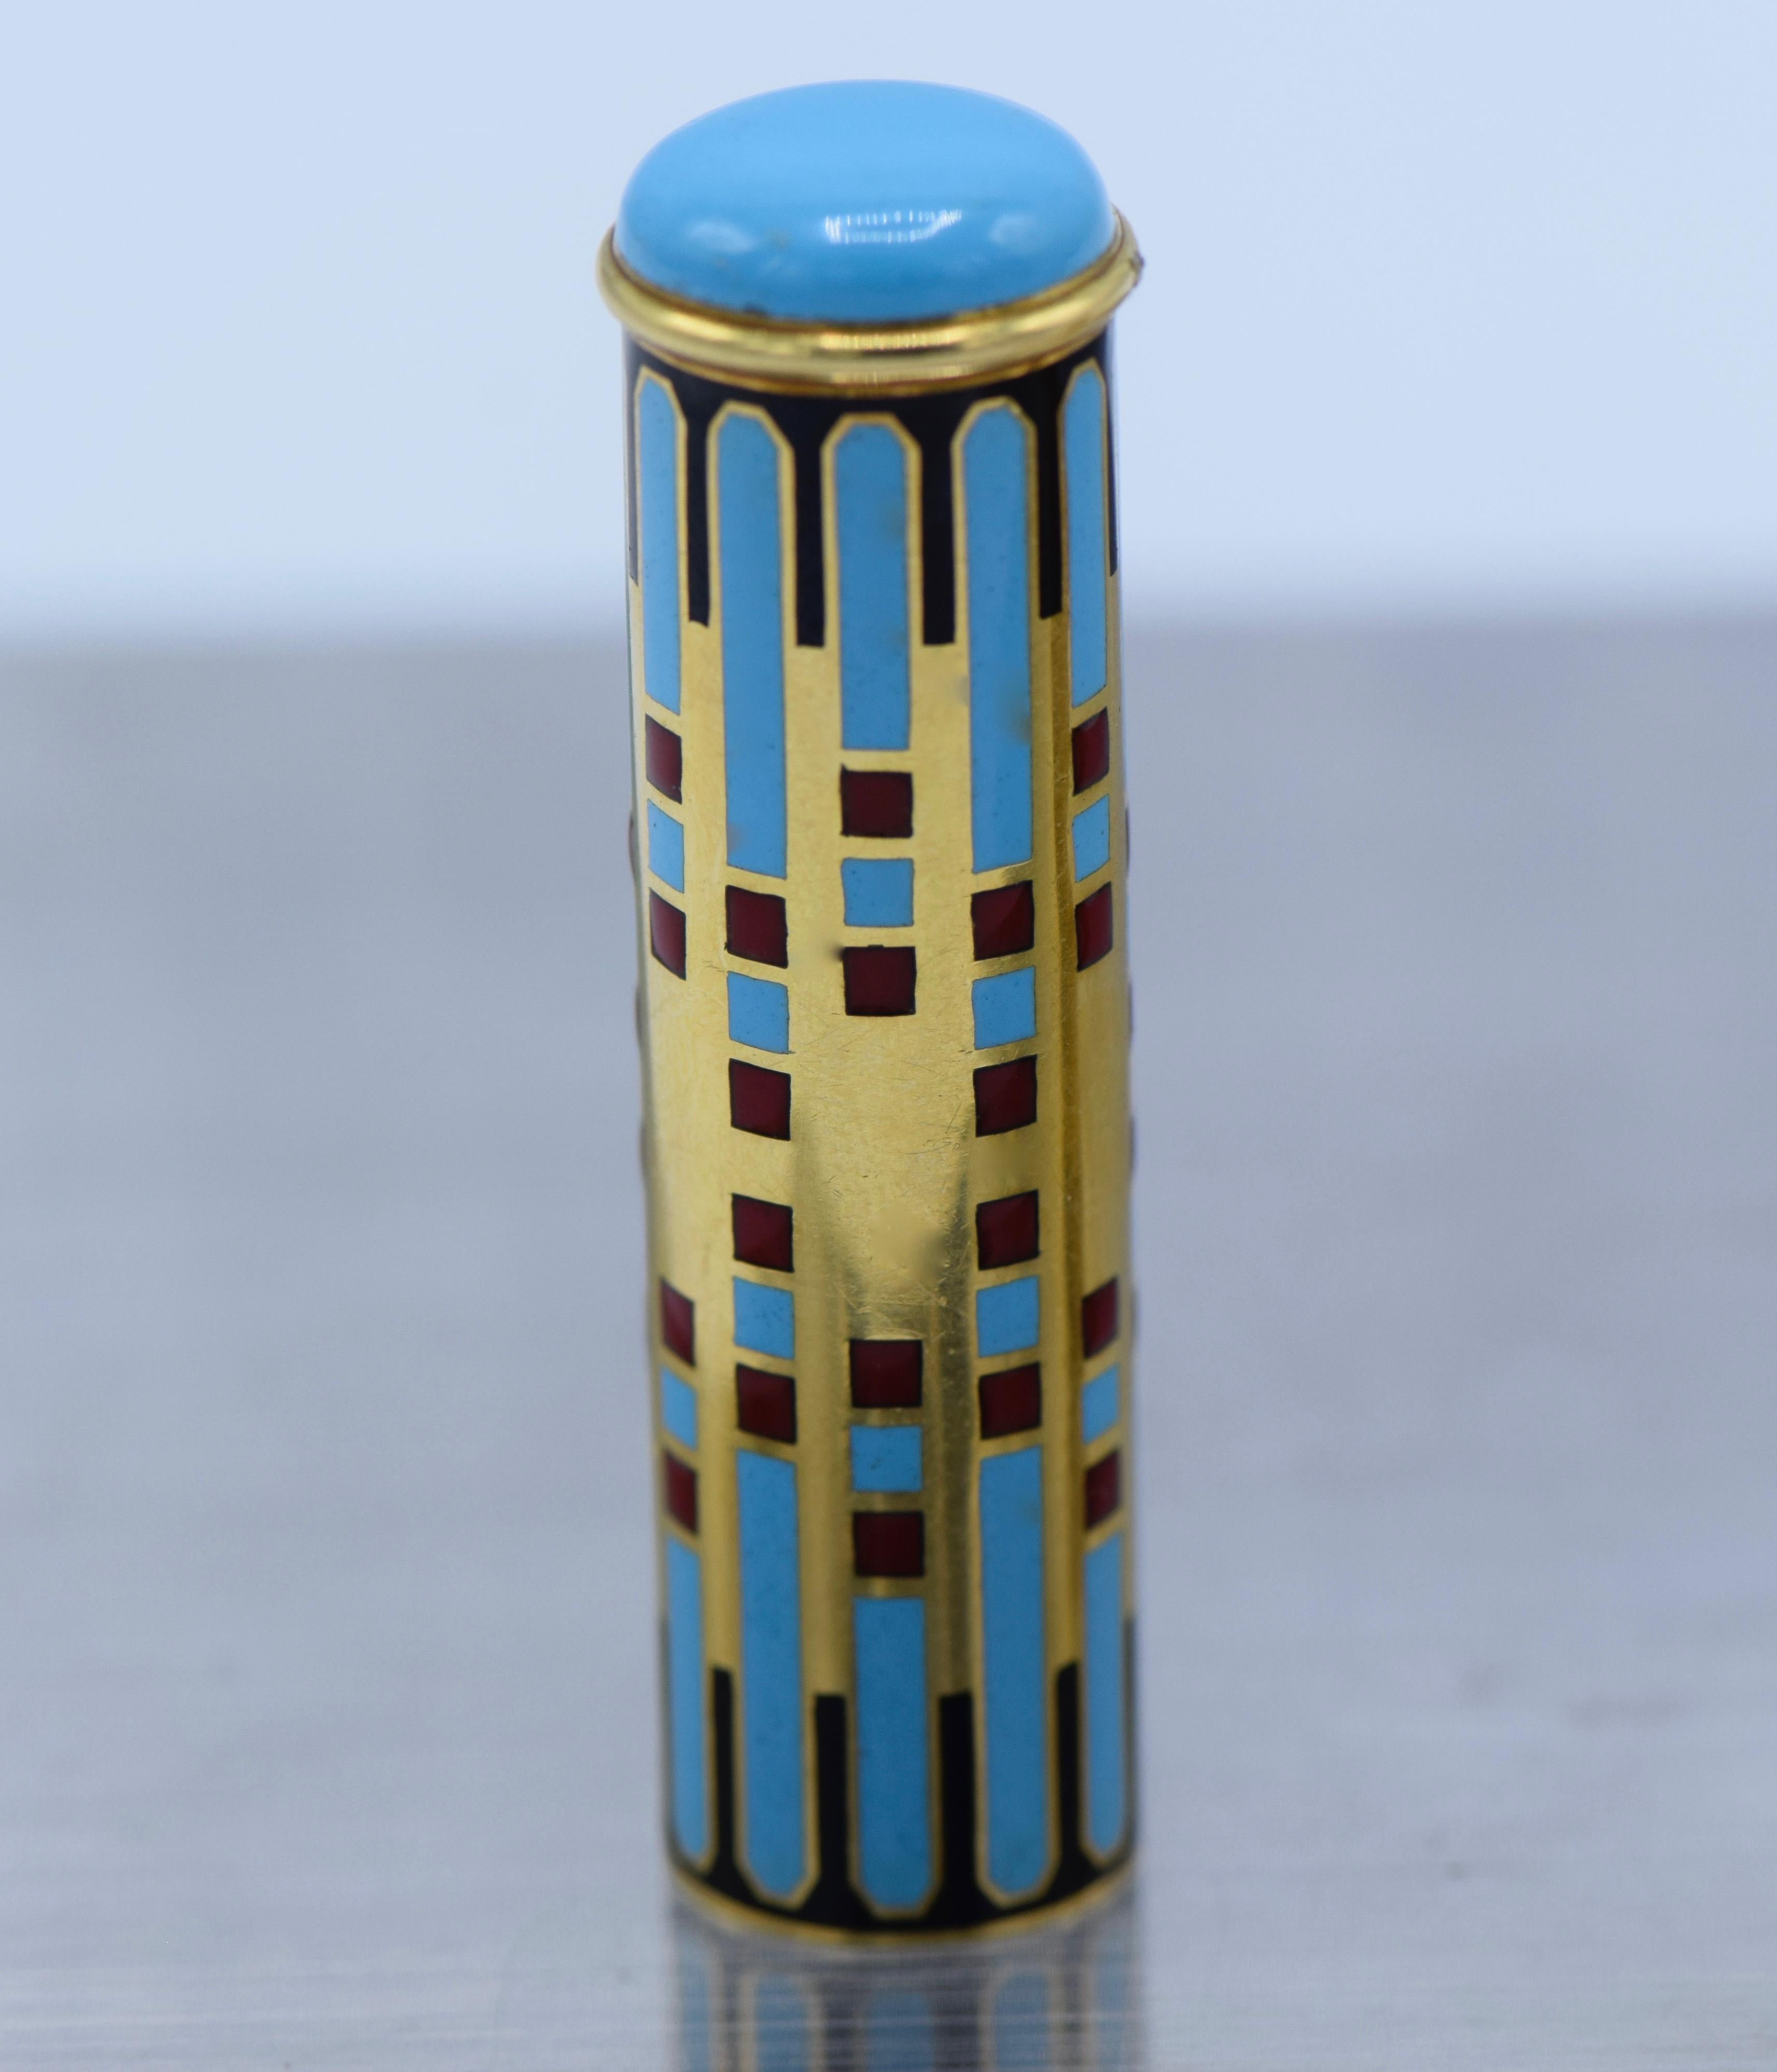 Van Cleef & Arpels, Frankreich, Art Deco 1920er Jahre, Lippenstifthalter aus 18k Gold und Emaille.

Dieser einzigartige Lippenstifthalter im typischen Art-Déco-Stil hat eine zartfarbige Emaille mit einem himmelblauen, roten und schwarzen